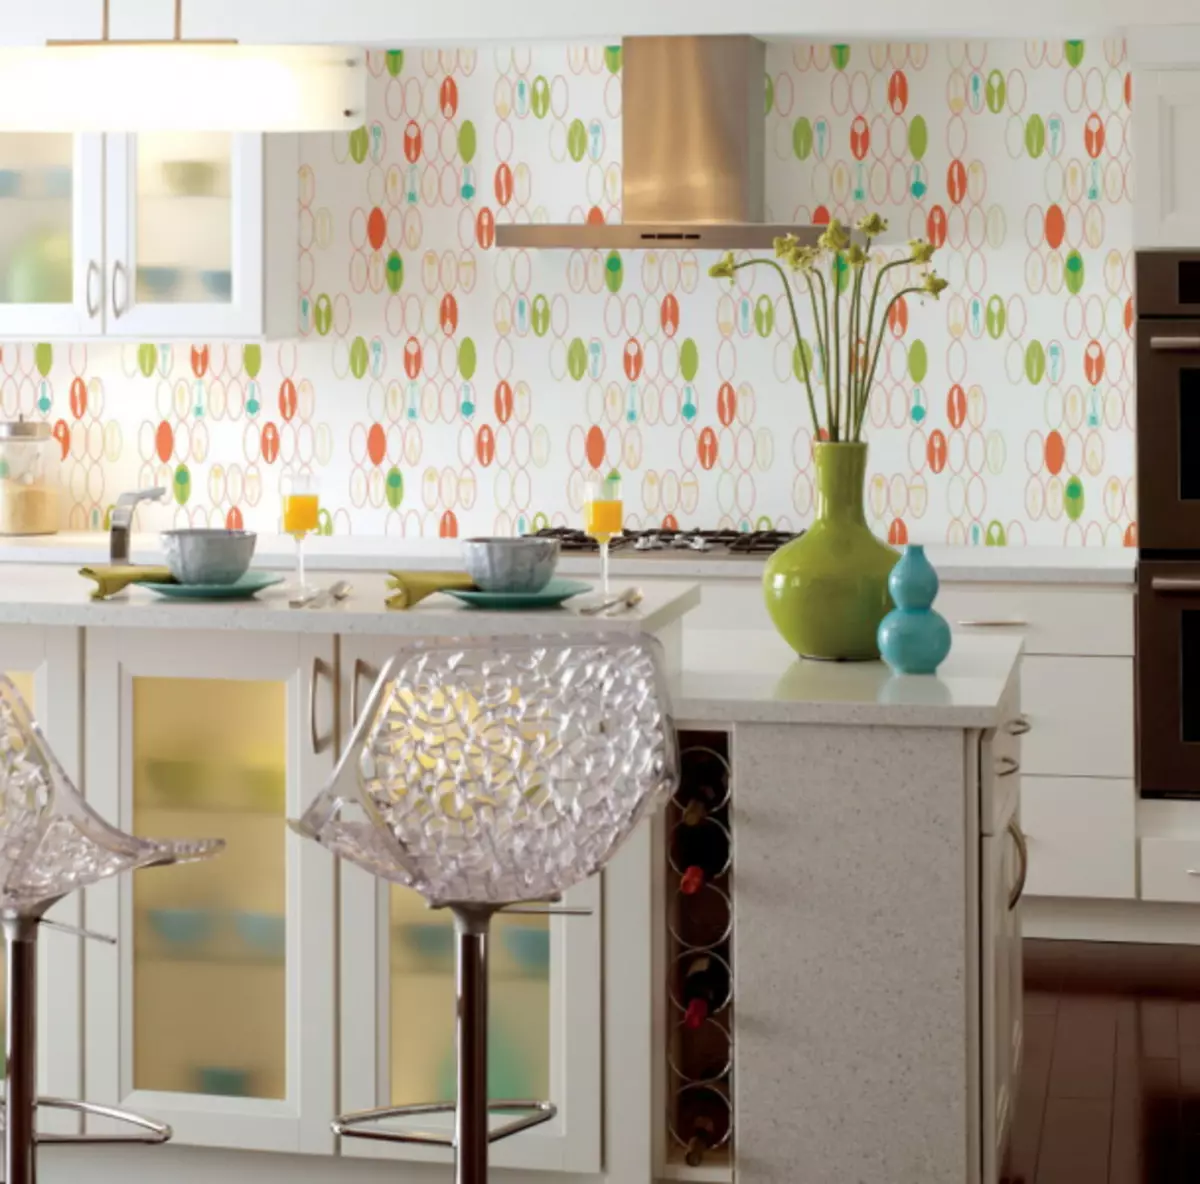 Rechter wallpapers voor kleine keuken: 6 basisaanbevelingen